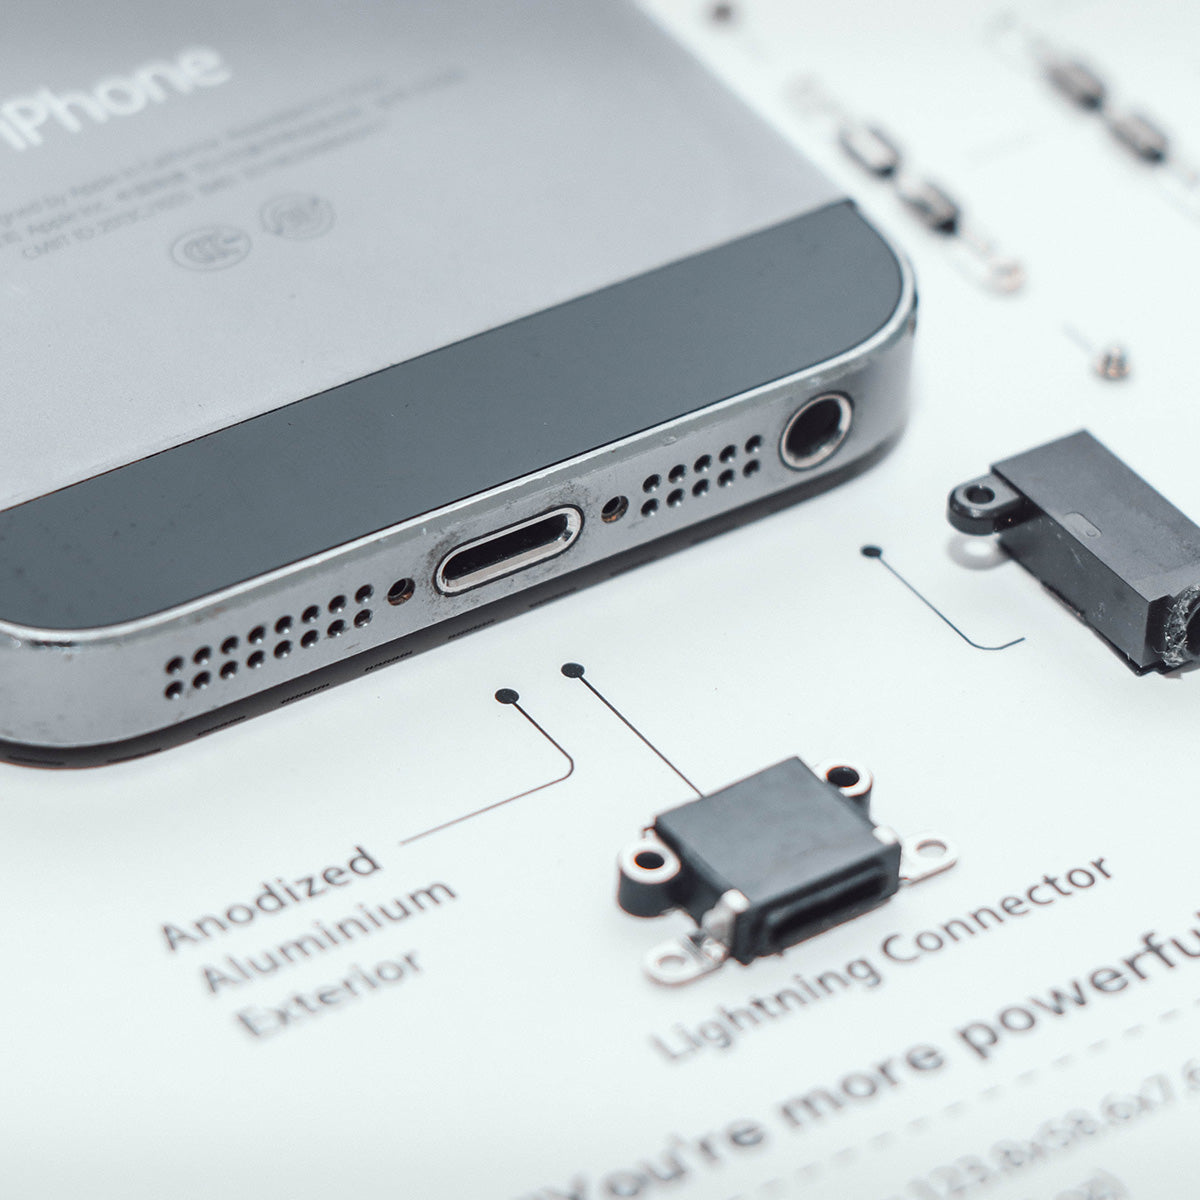 Xreart Zerlegtes iPhone im Bilderrahmen | Apple iPhone 5S